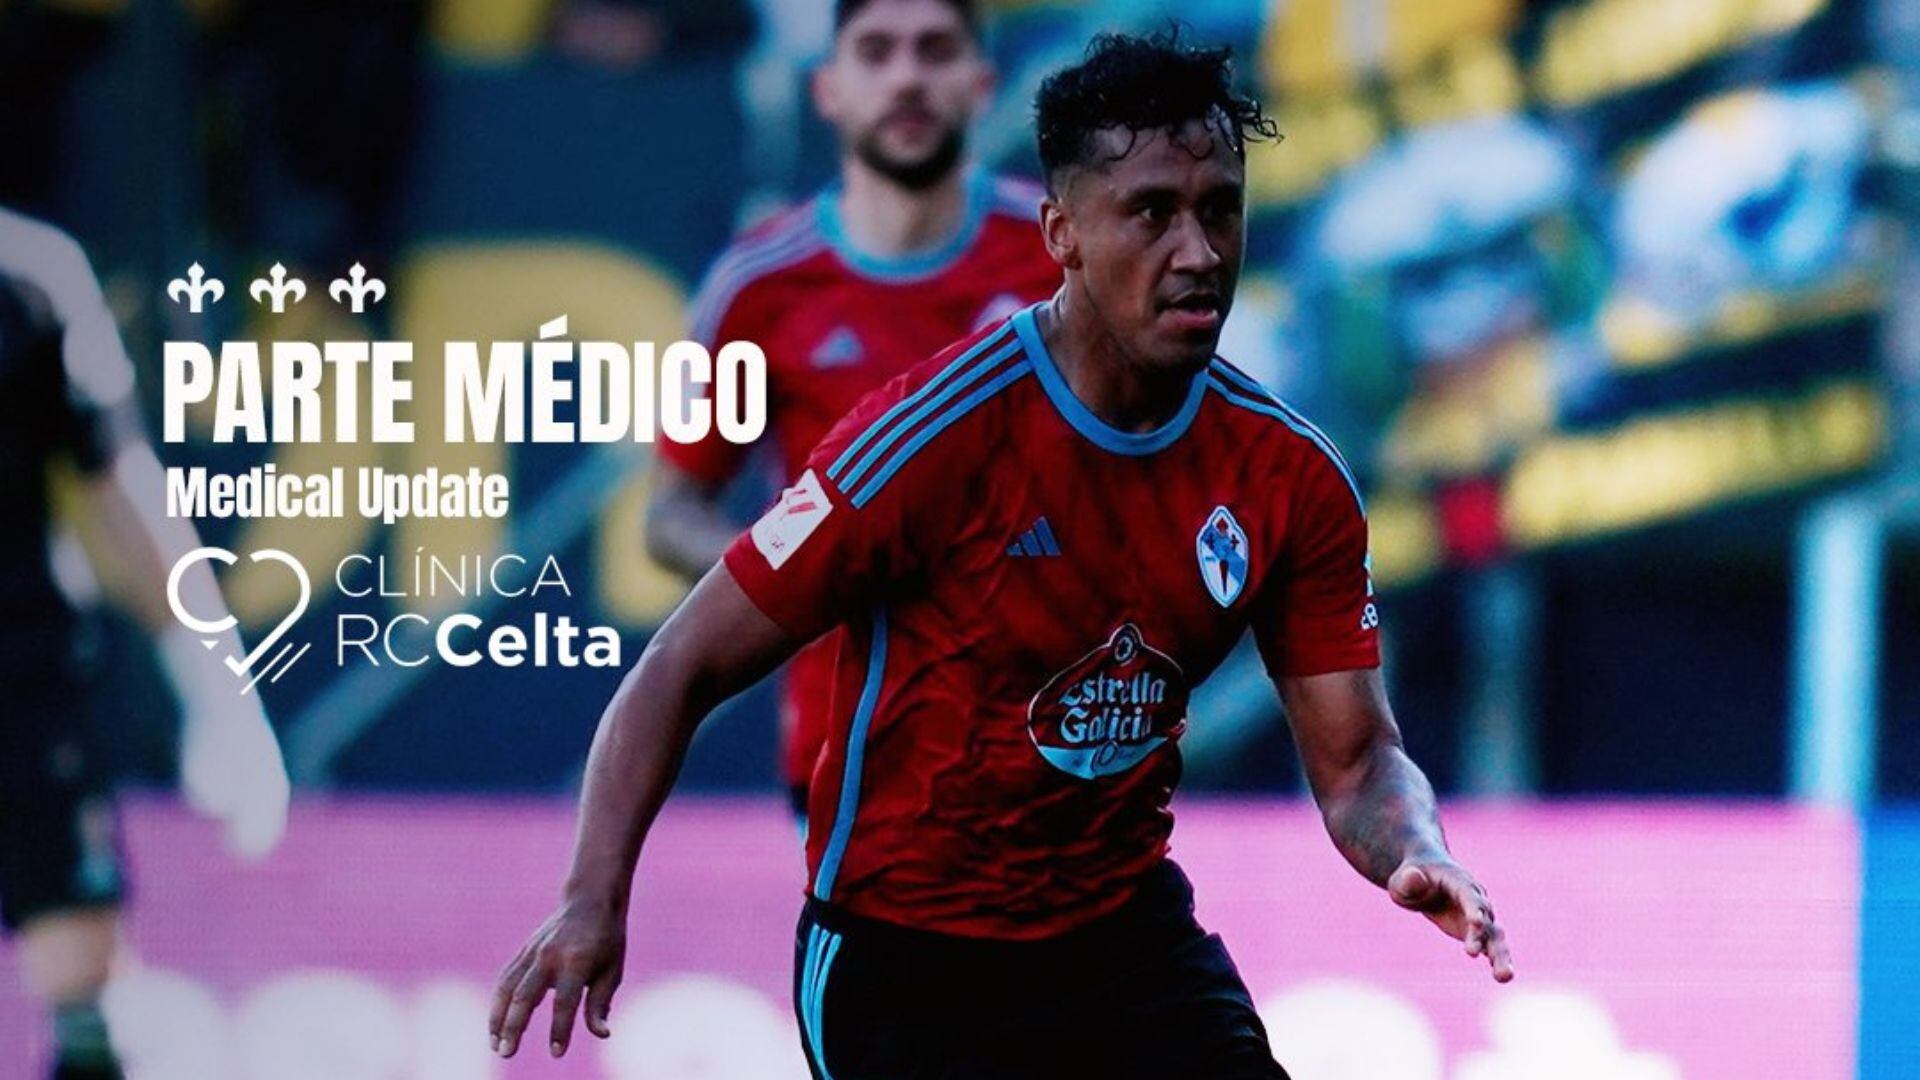 Renato Tapia difícilmente estará disponible para la siguiente jornada contra Almería. - Crédito: Celta de Vigo.